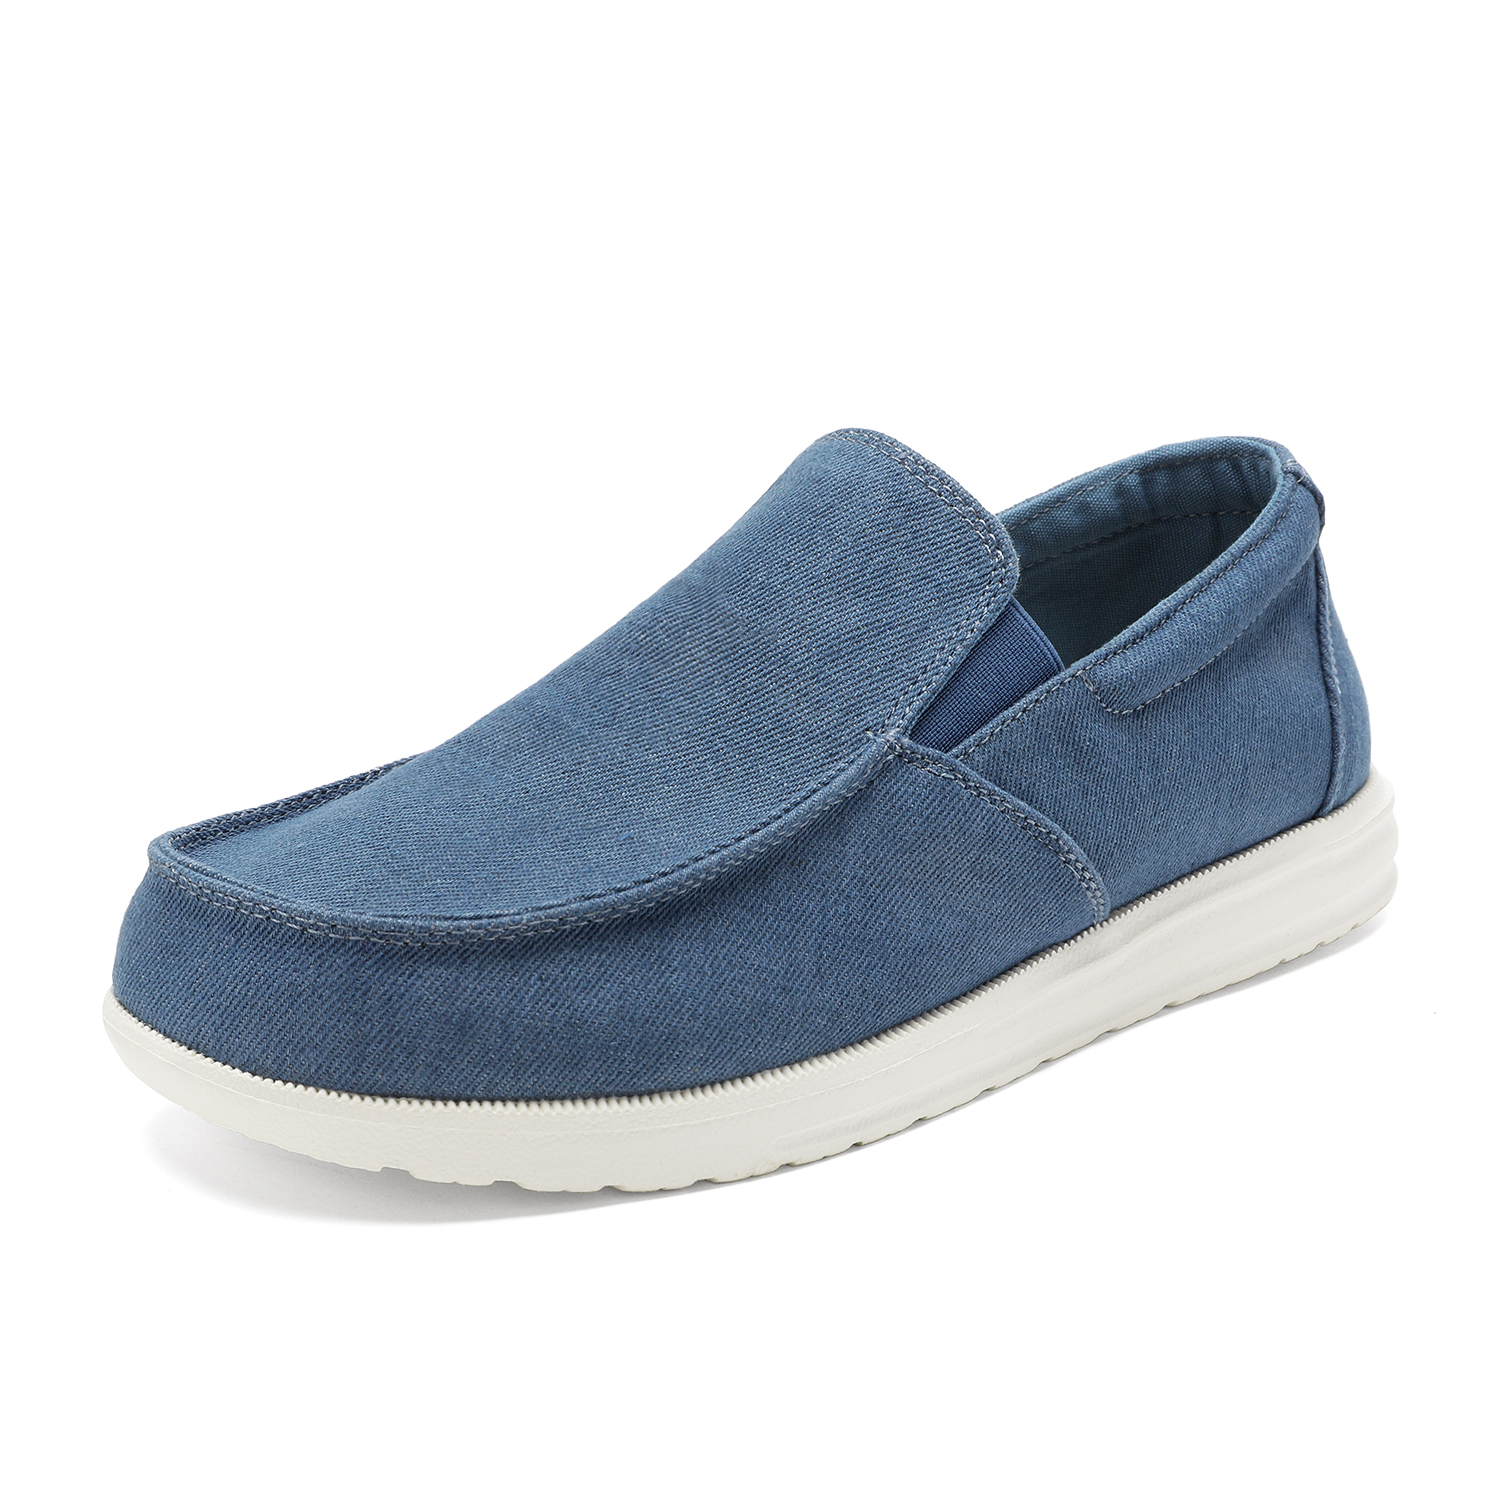 Bruno Marc Men's Slip On Loafer Walking Shoes SUNVENT-01 BLUE/DENIM size 8 - image 1 of 6